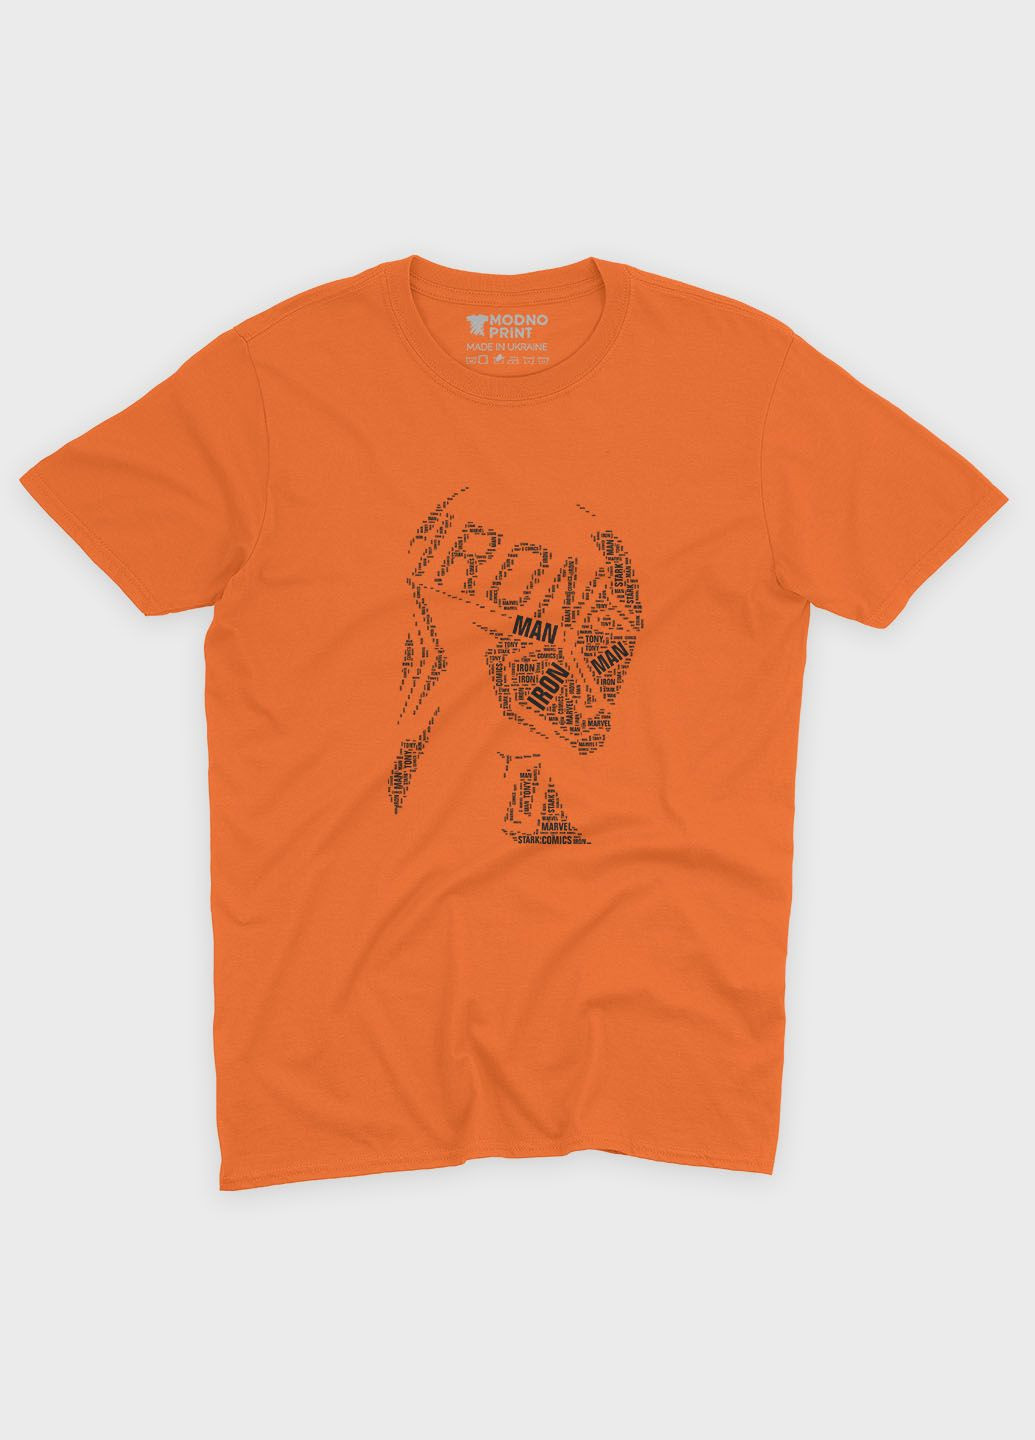 Оранжевая демисезонная футболка для мальчика с принтом супергероя - железный человек (ts001-1-ora-006-016-002-b) Modno